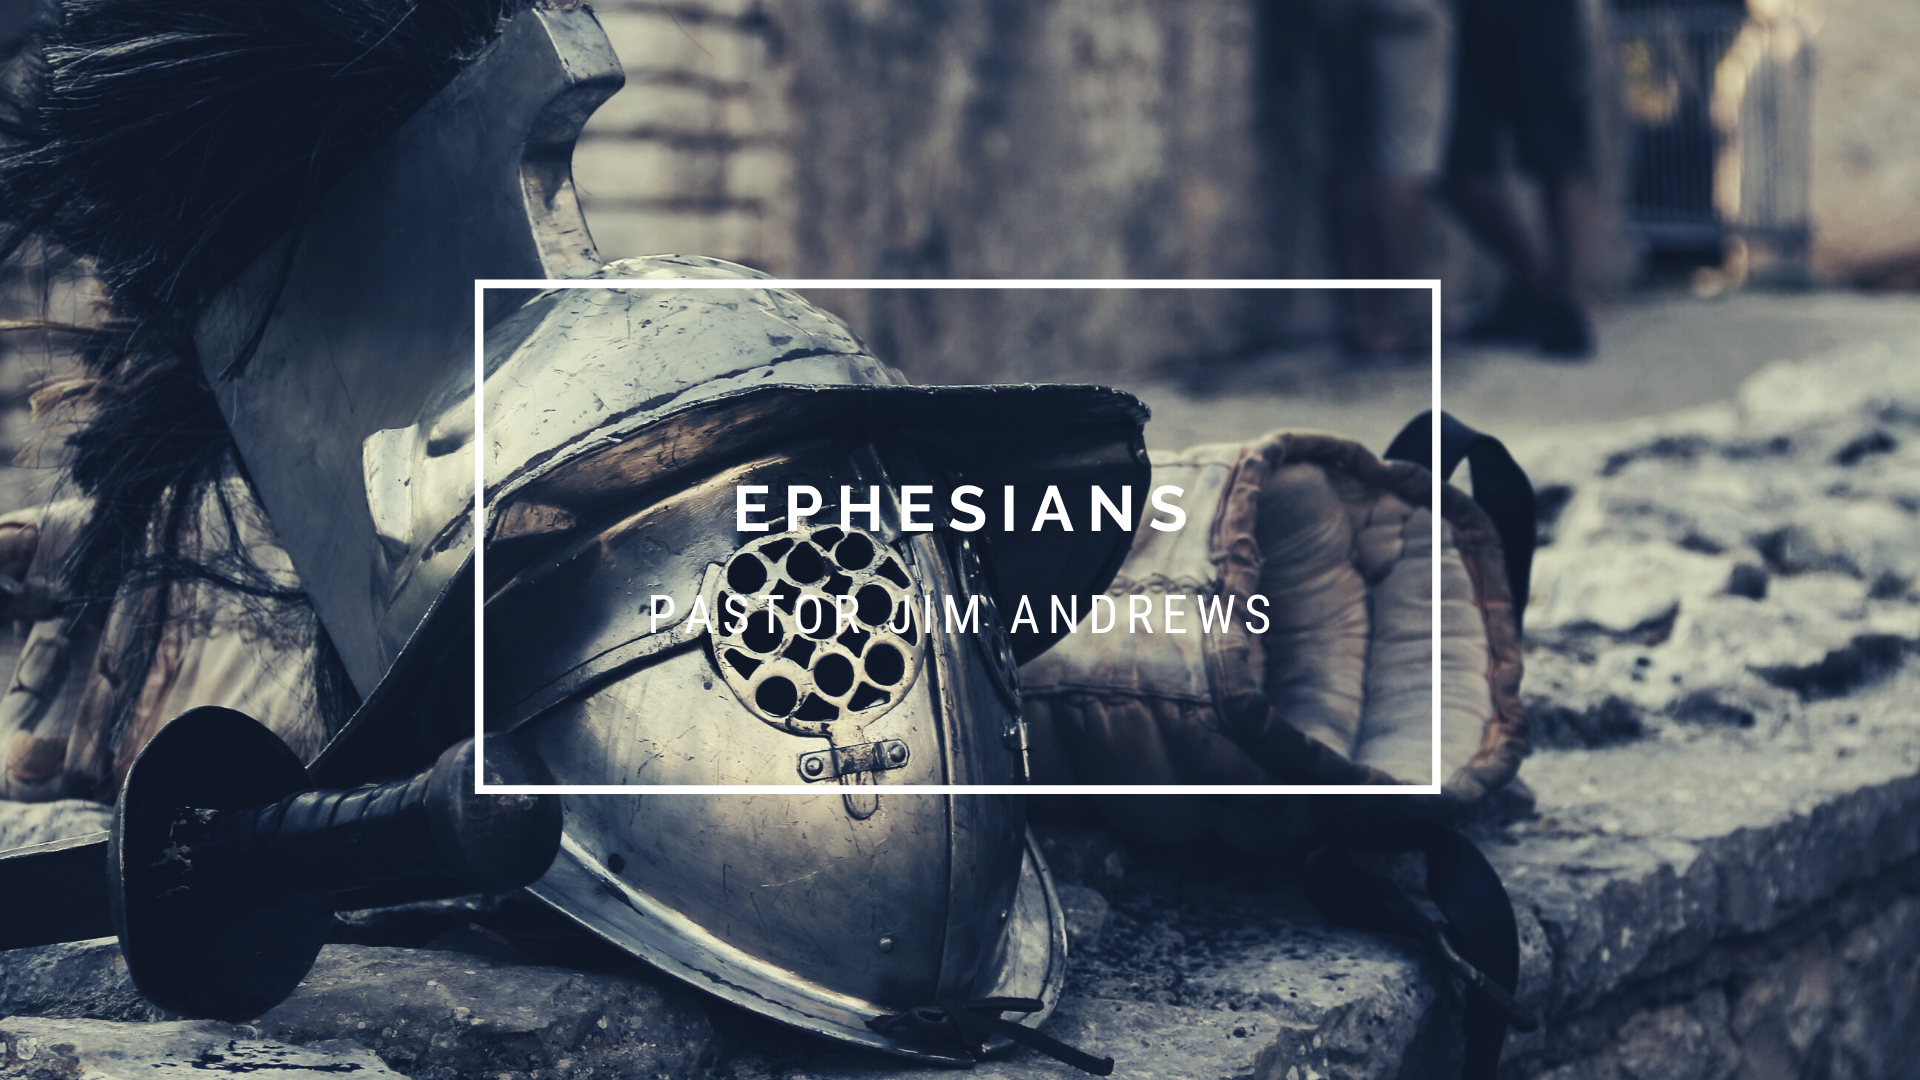 Ephesians 6:4-5